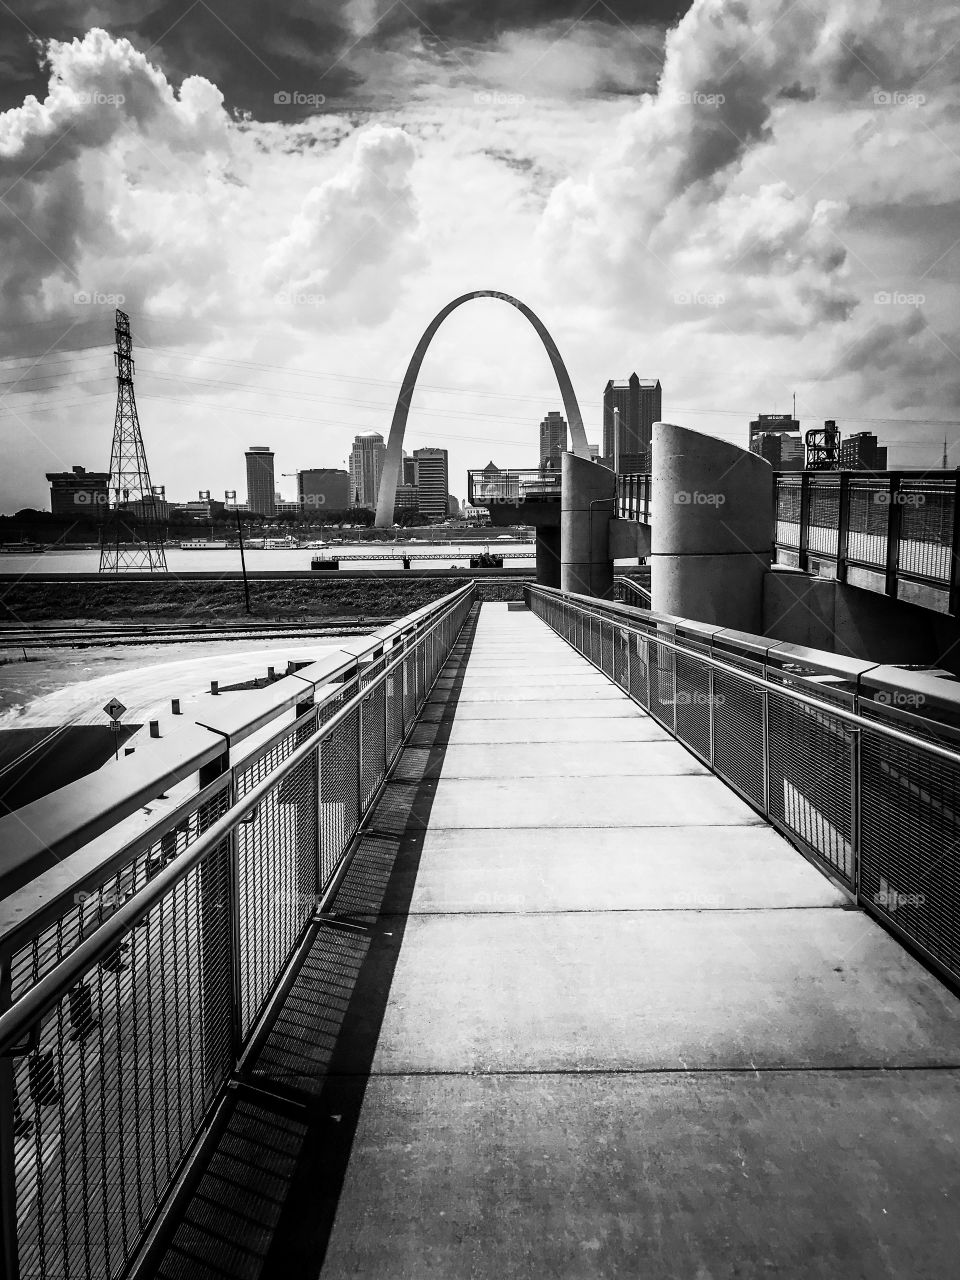 St. Louis, MO gateway arch